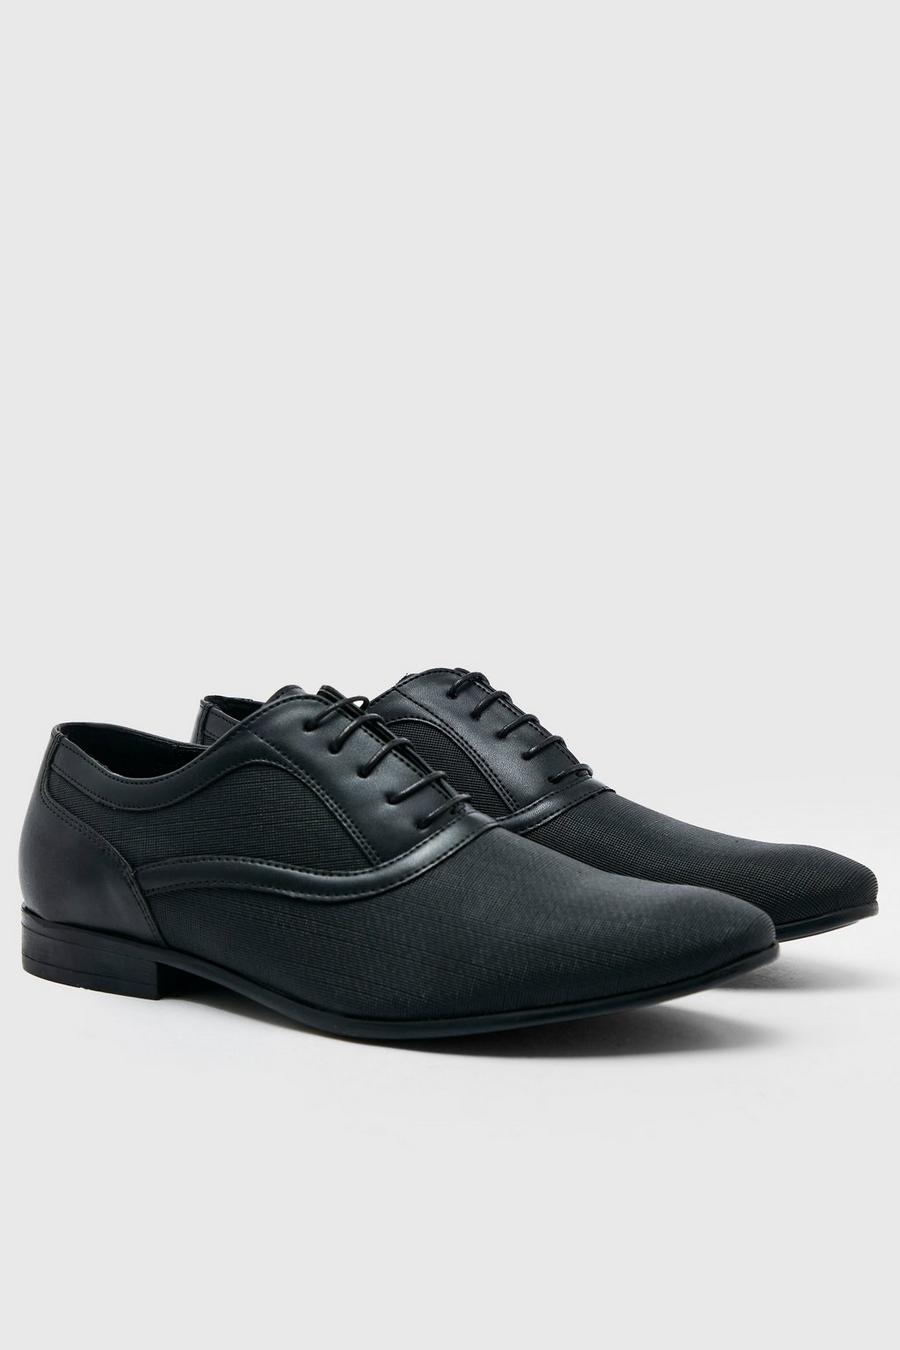 Geprägte Kunstleder Oxford-Schuhe, Black